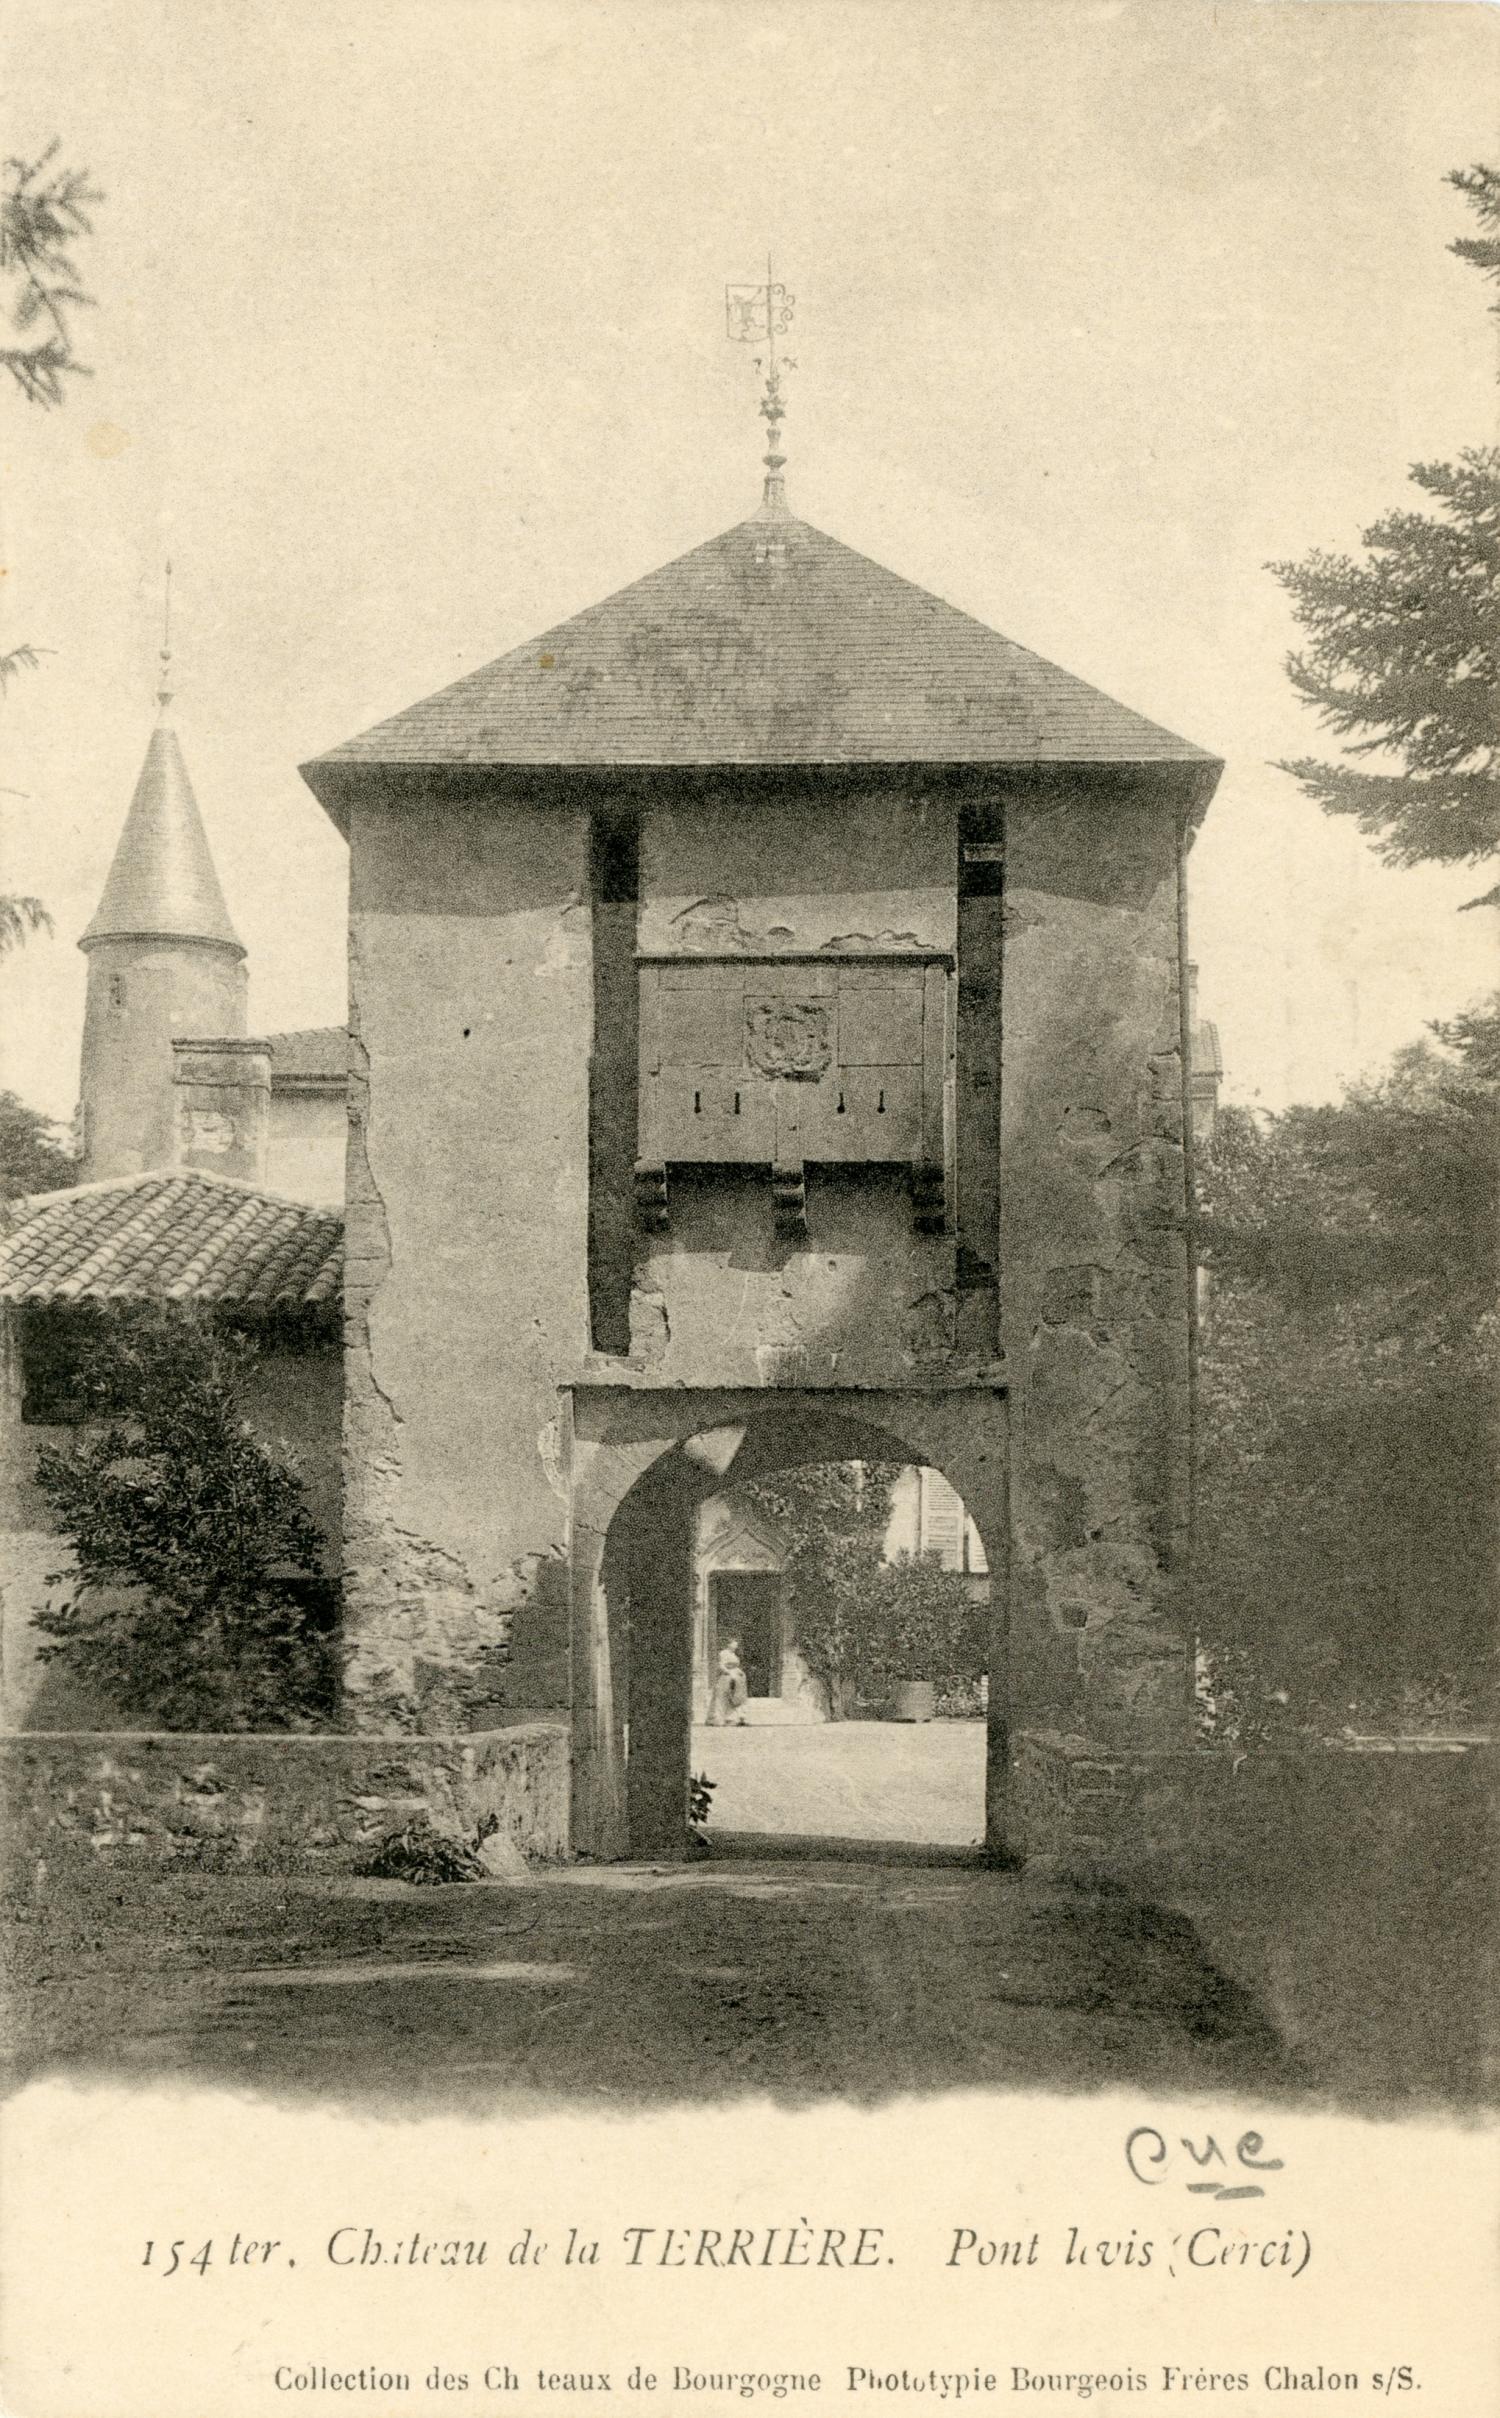 Château de la Terrière. - Pont levis (Cercié)